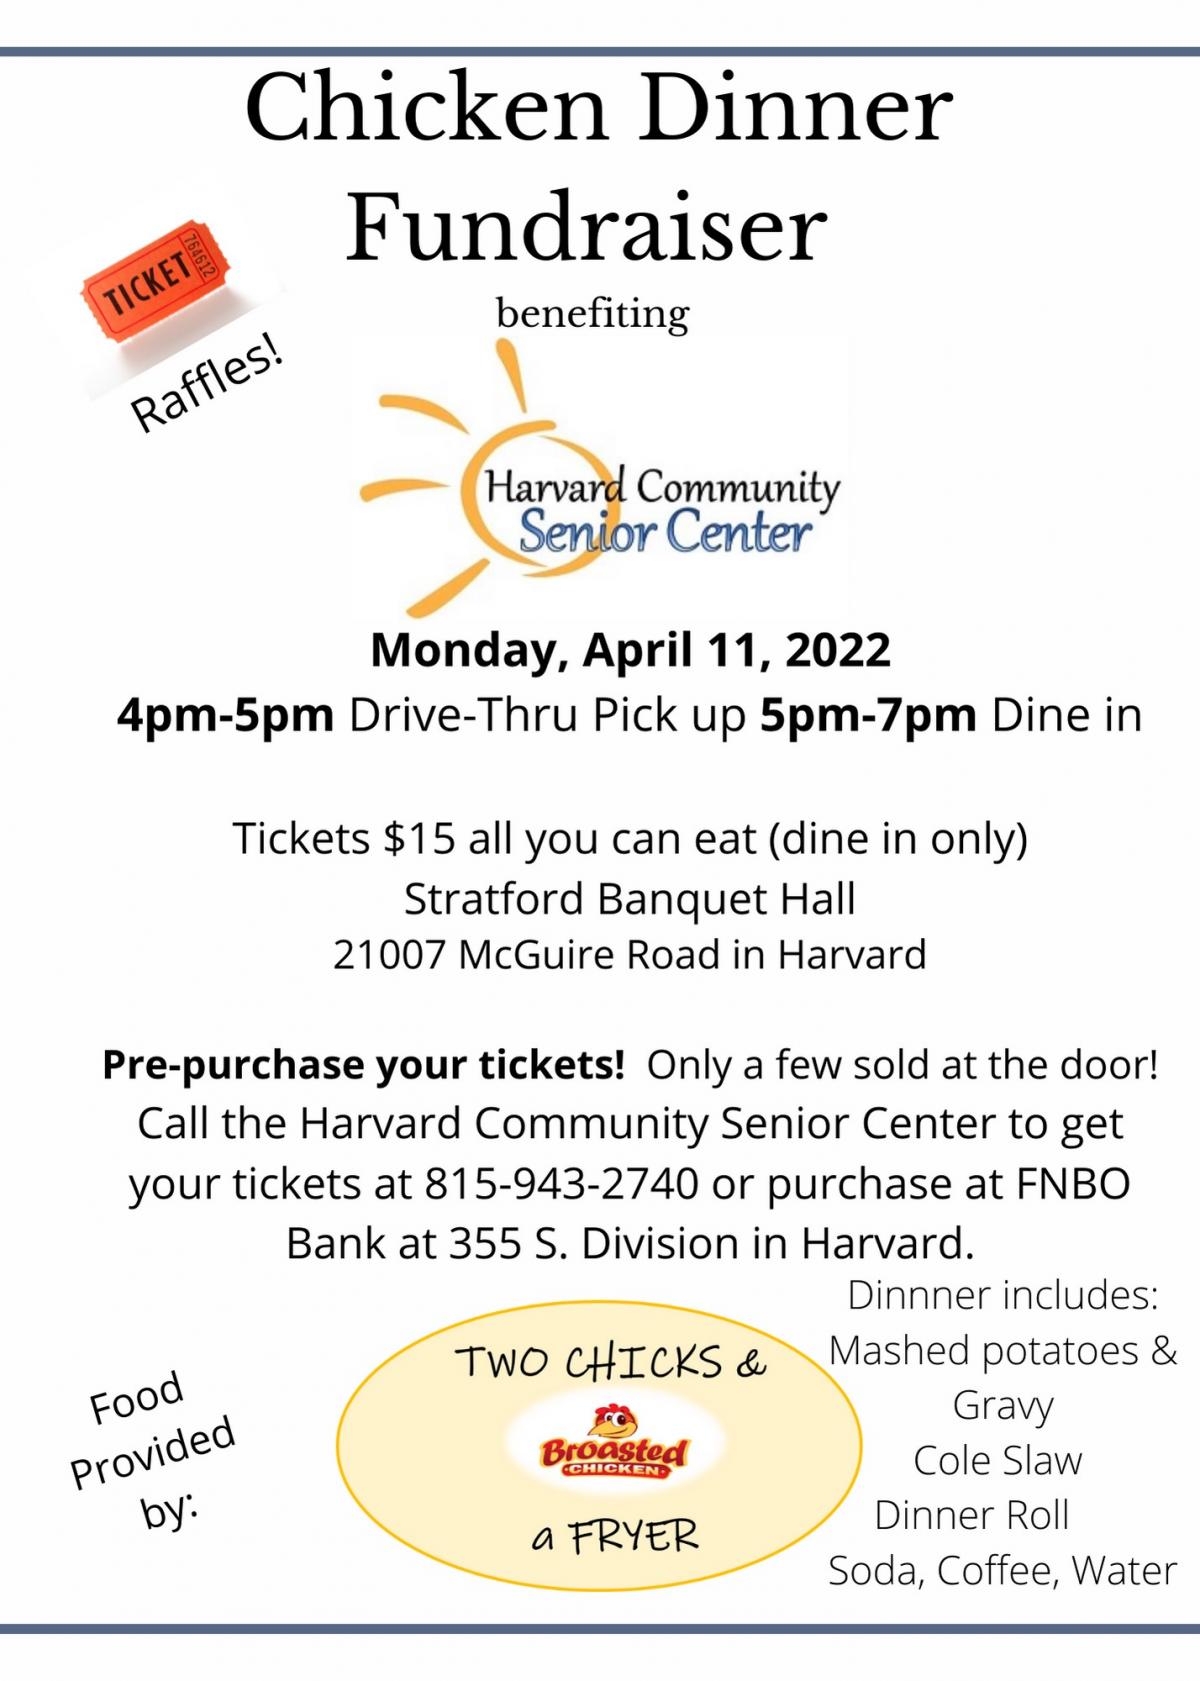 Harvard Comm Sr Center Chicken Dinner Fundraiser | City of Harvard Illinois